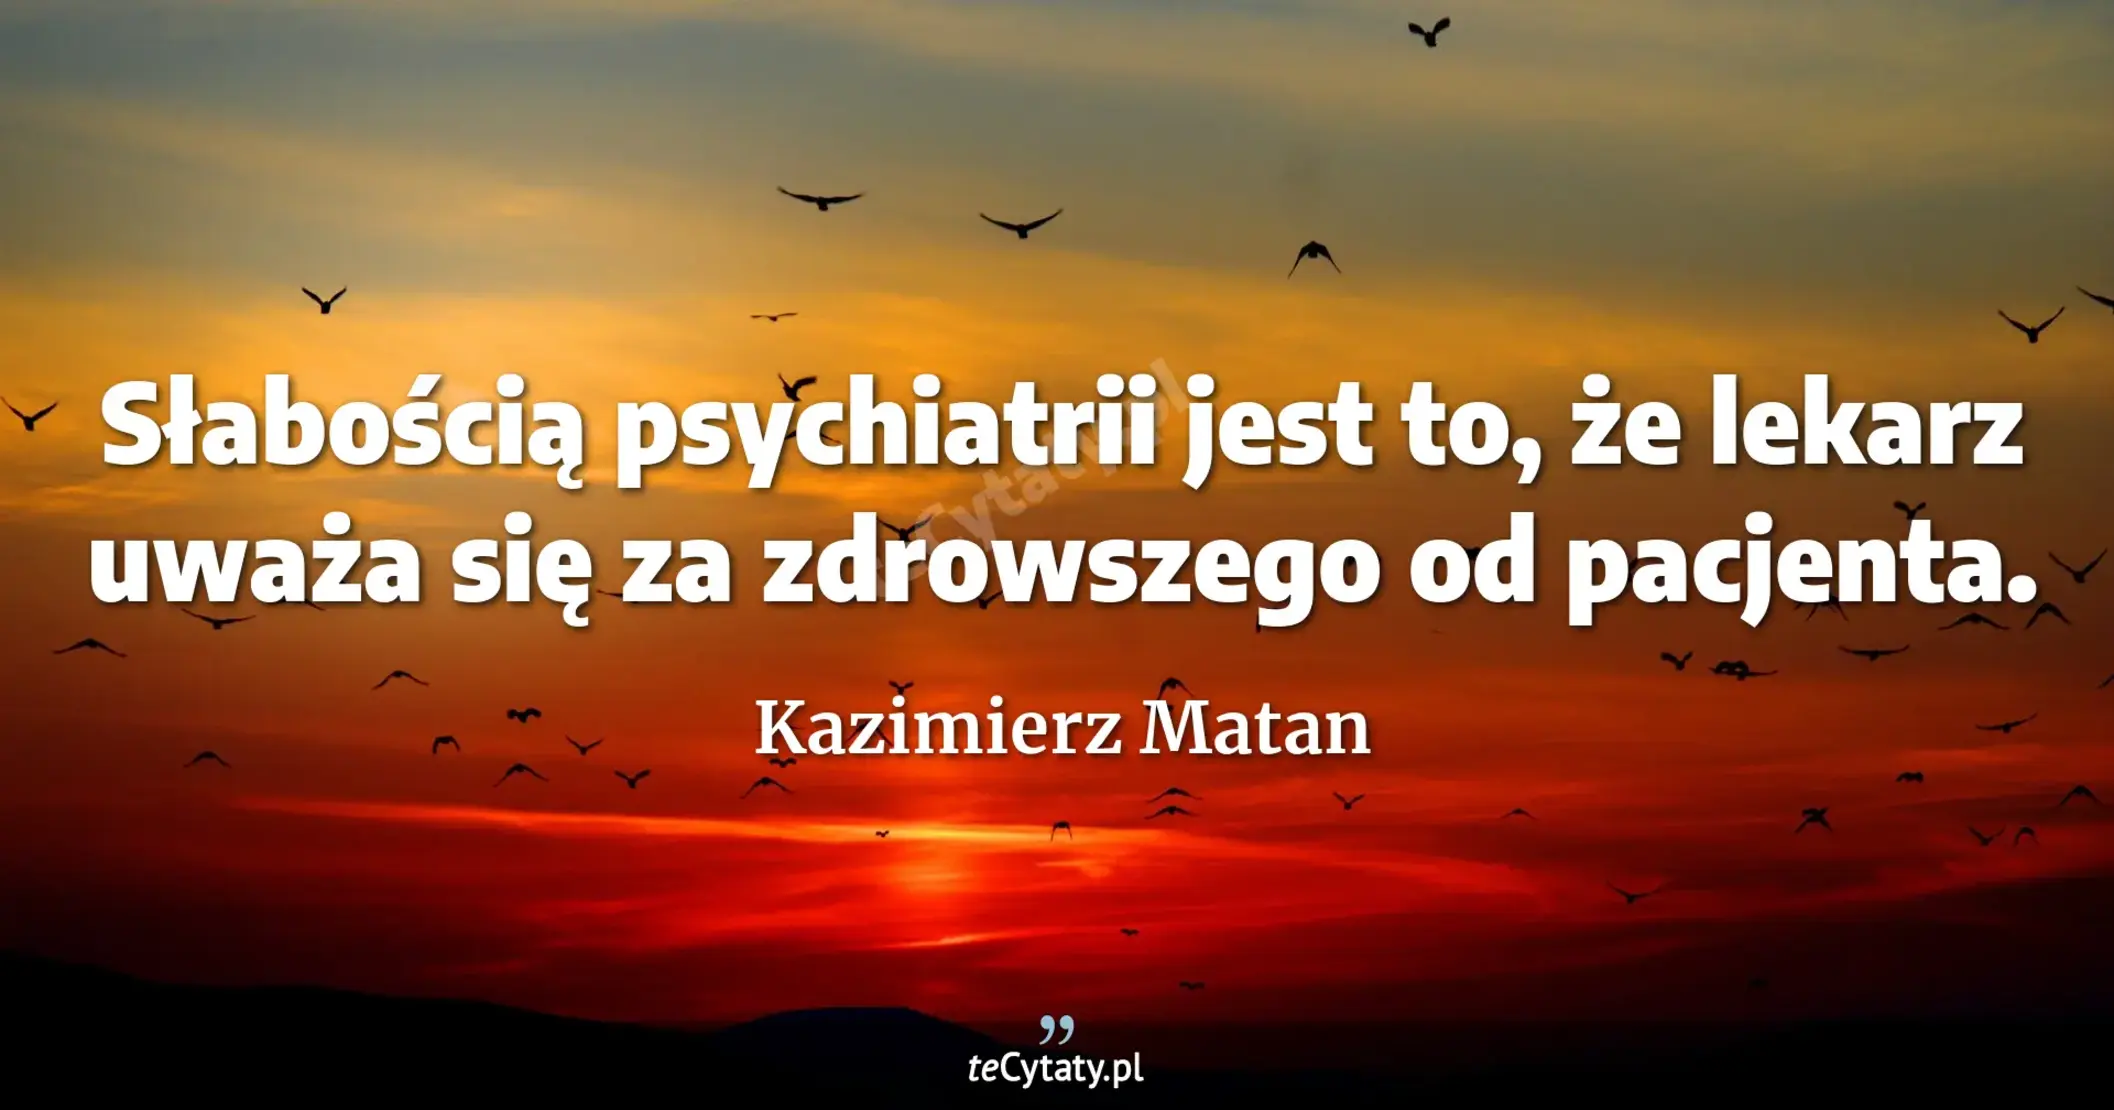 Słabością psychiatrii jest to, że lekarz uważa się za zdrowszego od pacjenta. - Kazimierz Matan